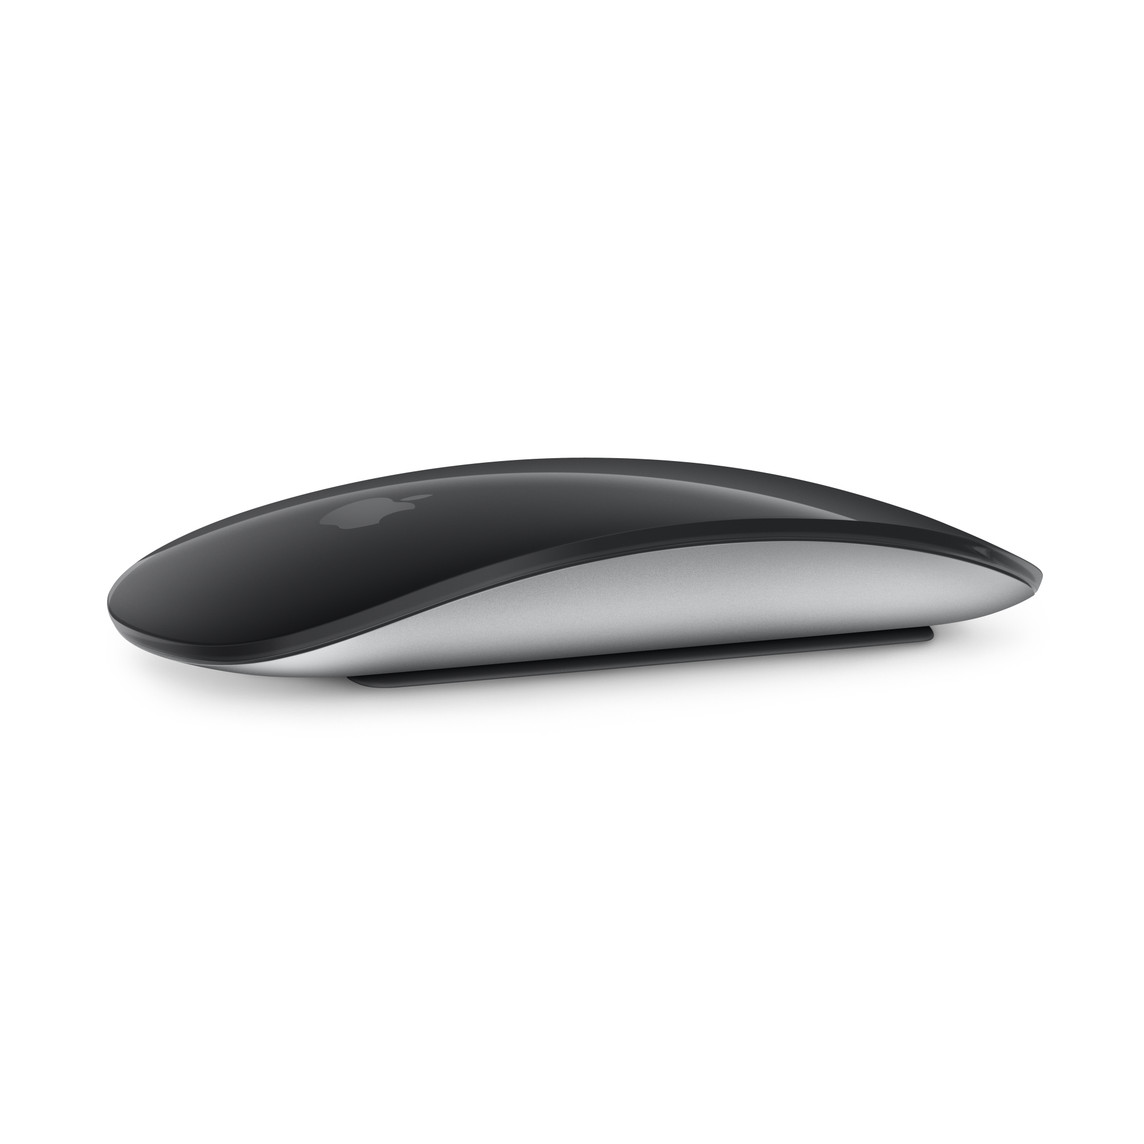 Image d’une Magic Mouse noire montrant son design incurvé et sa surface Multi-Touch.
